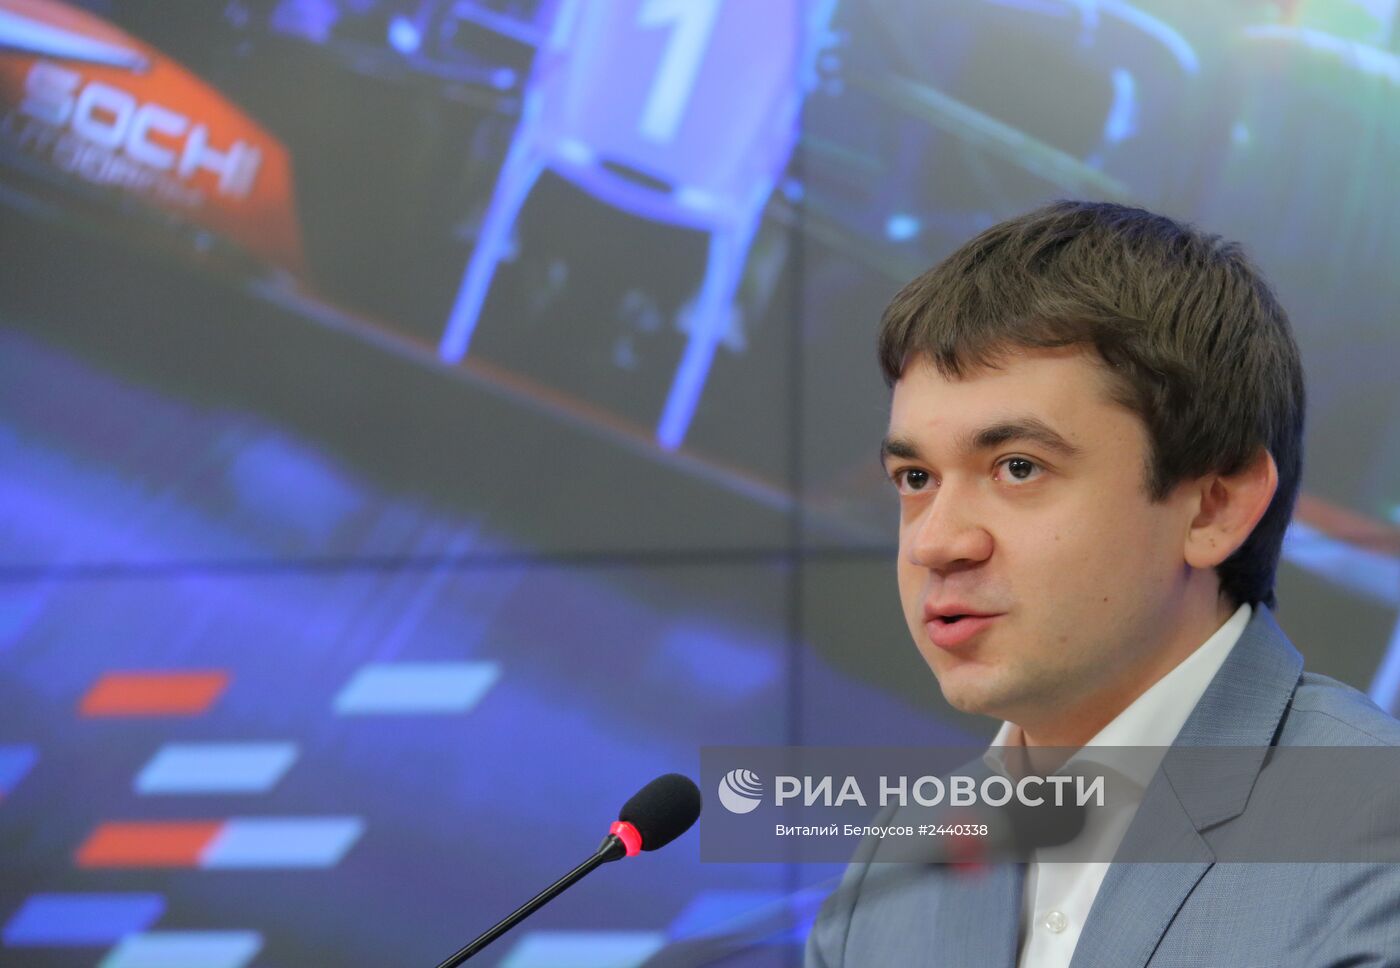 Пресс-конференция 2014 Formula 1 Гран-при России, посвященная старту продаж билетов